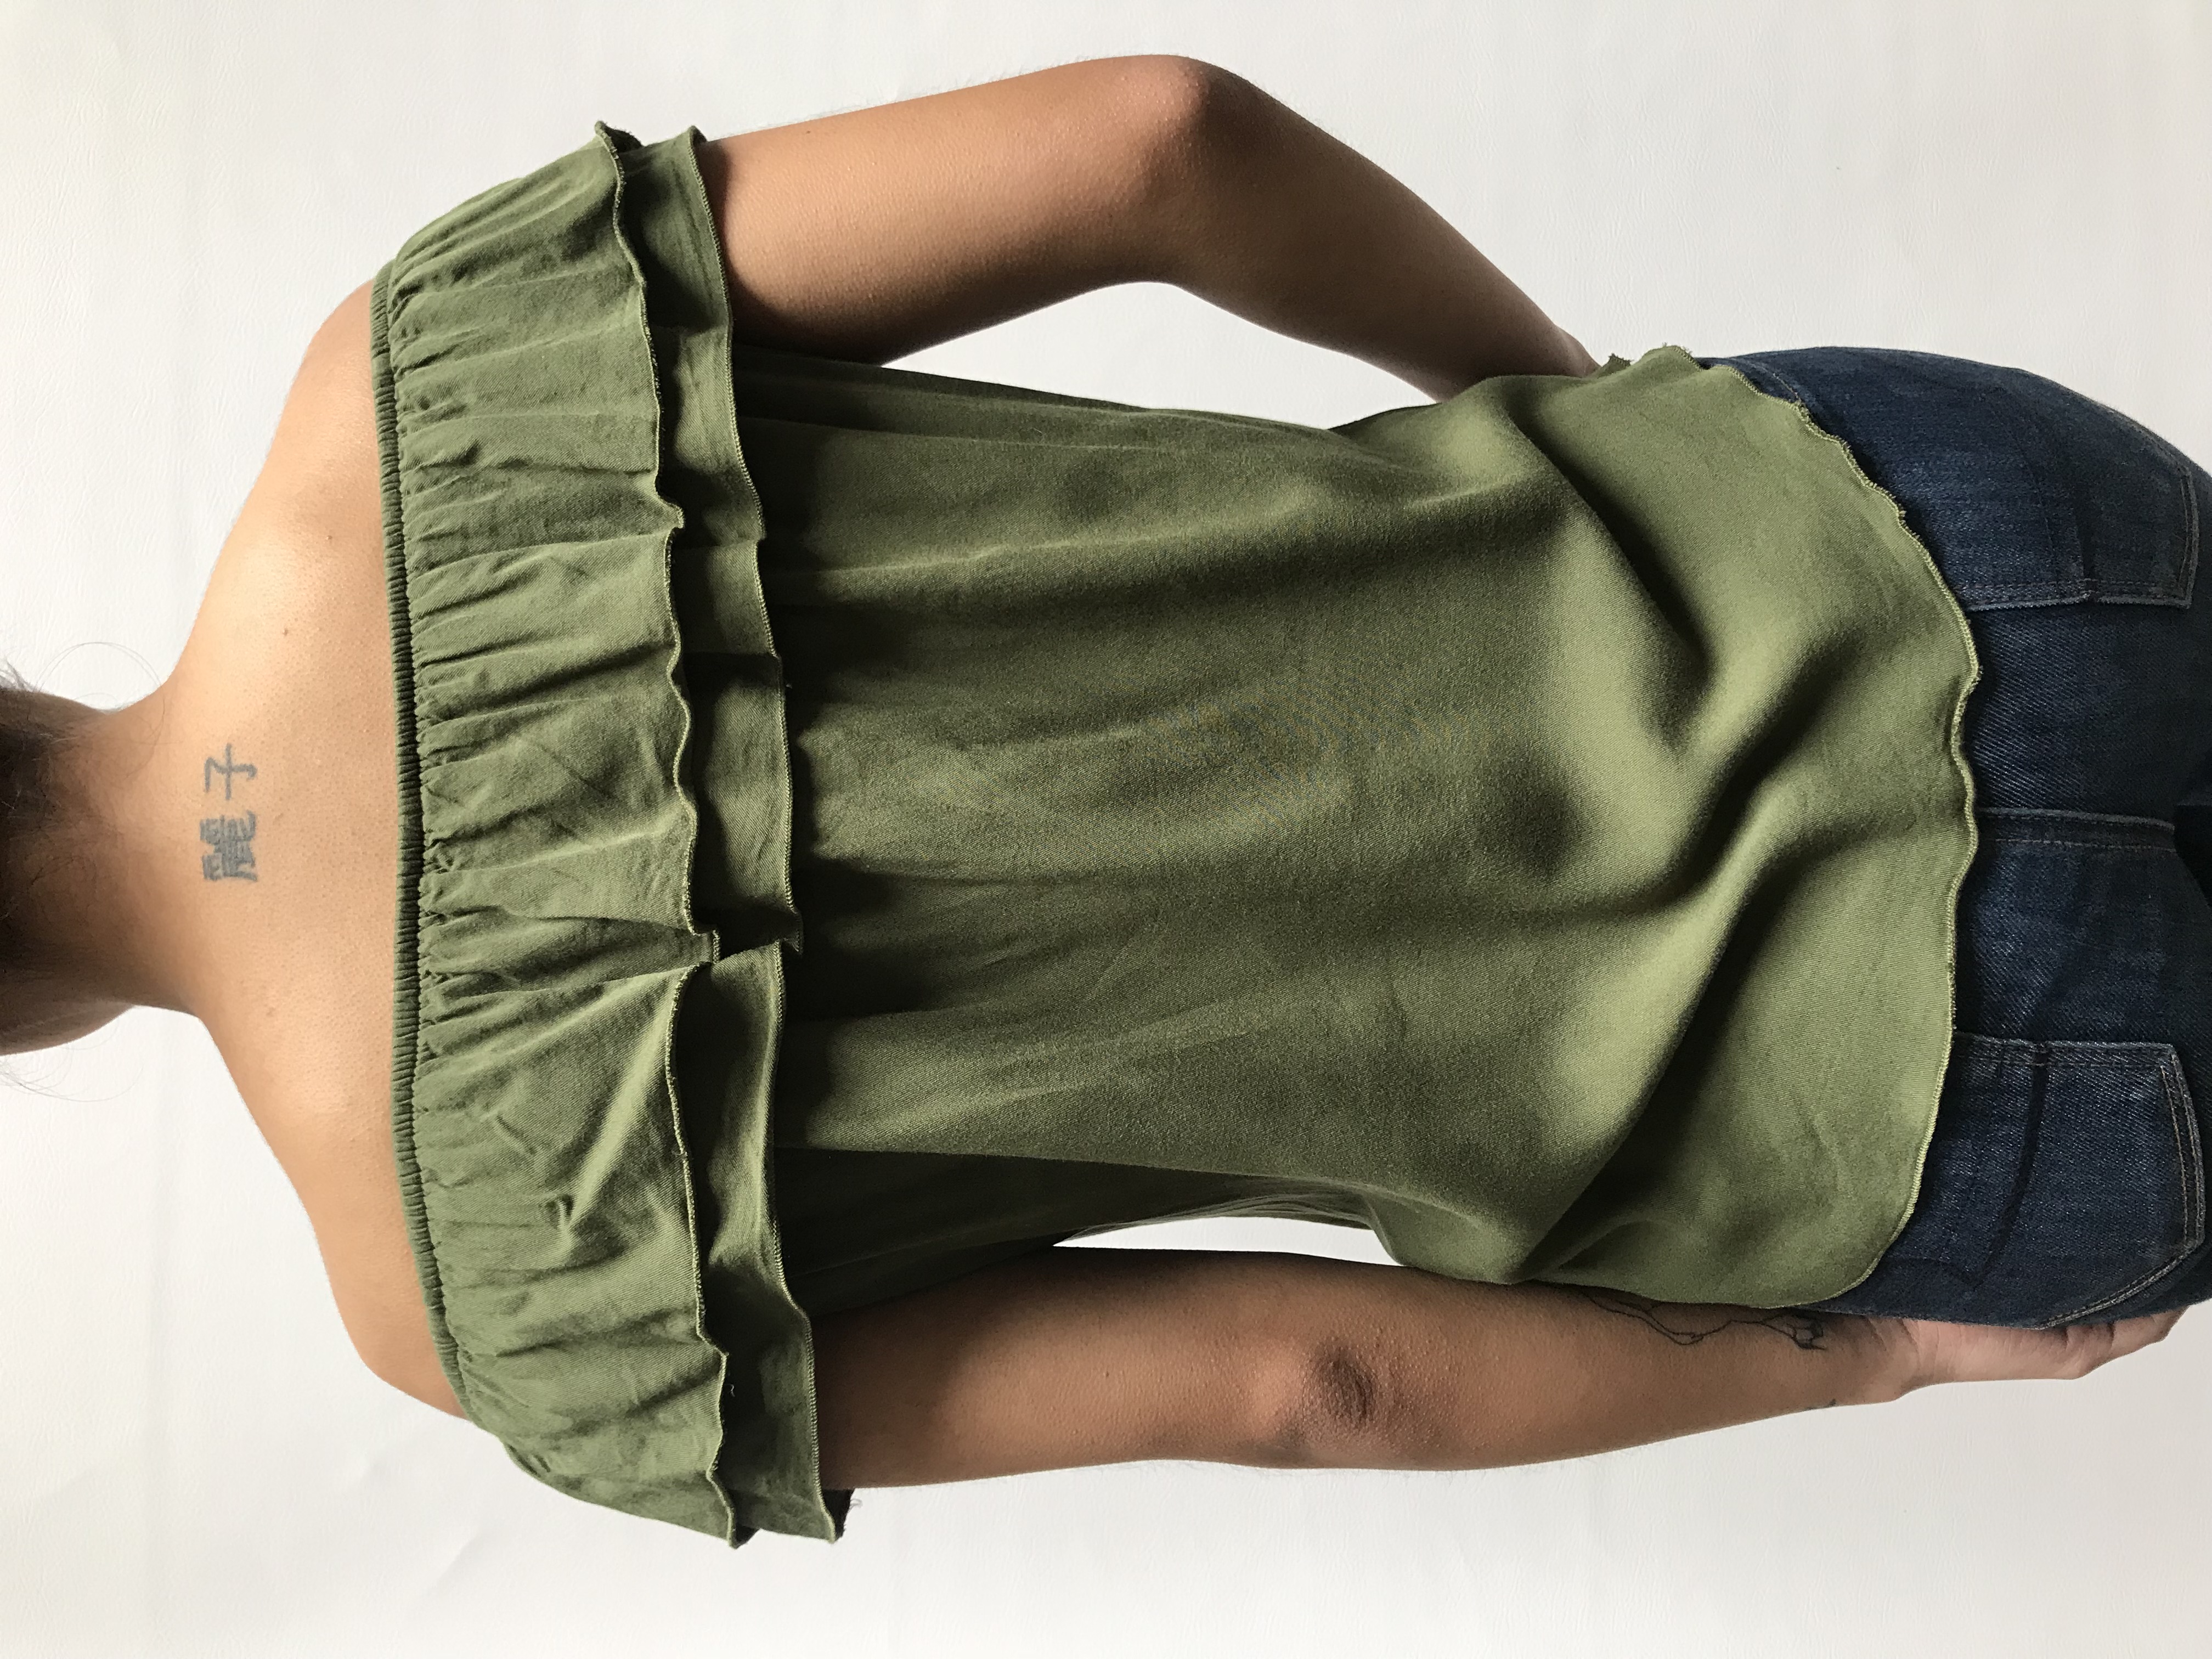 Blusa off shoulder verde con volantes en los hombros, tela tipo algodón
Talla S